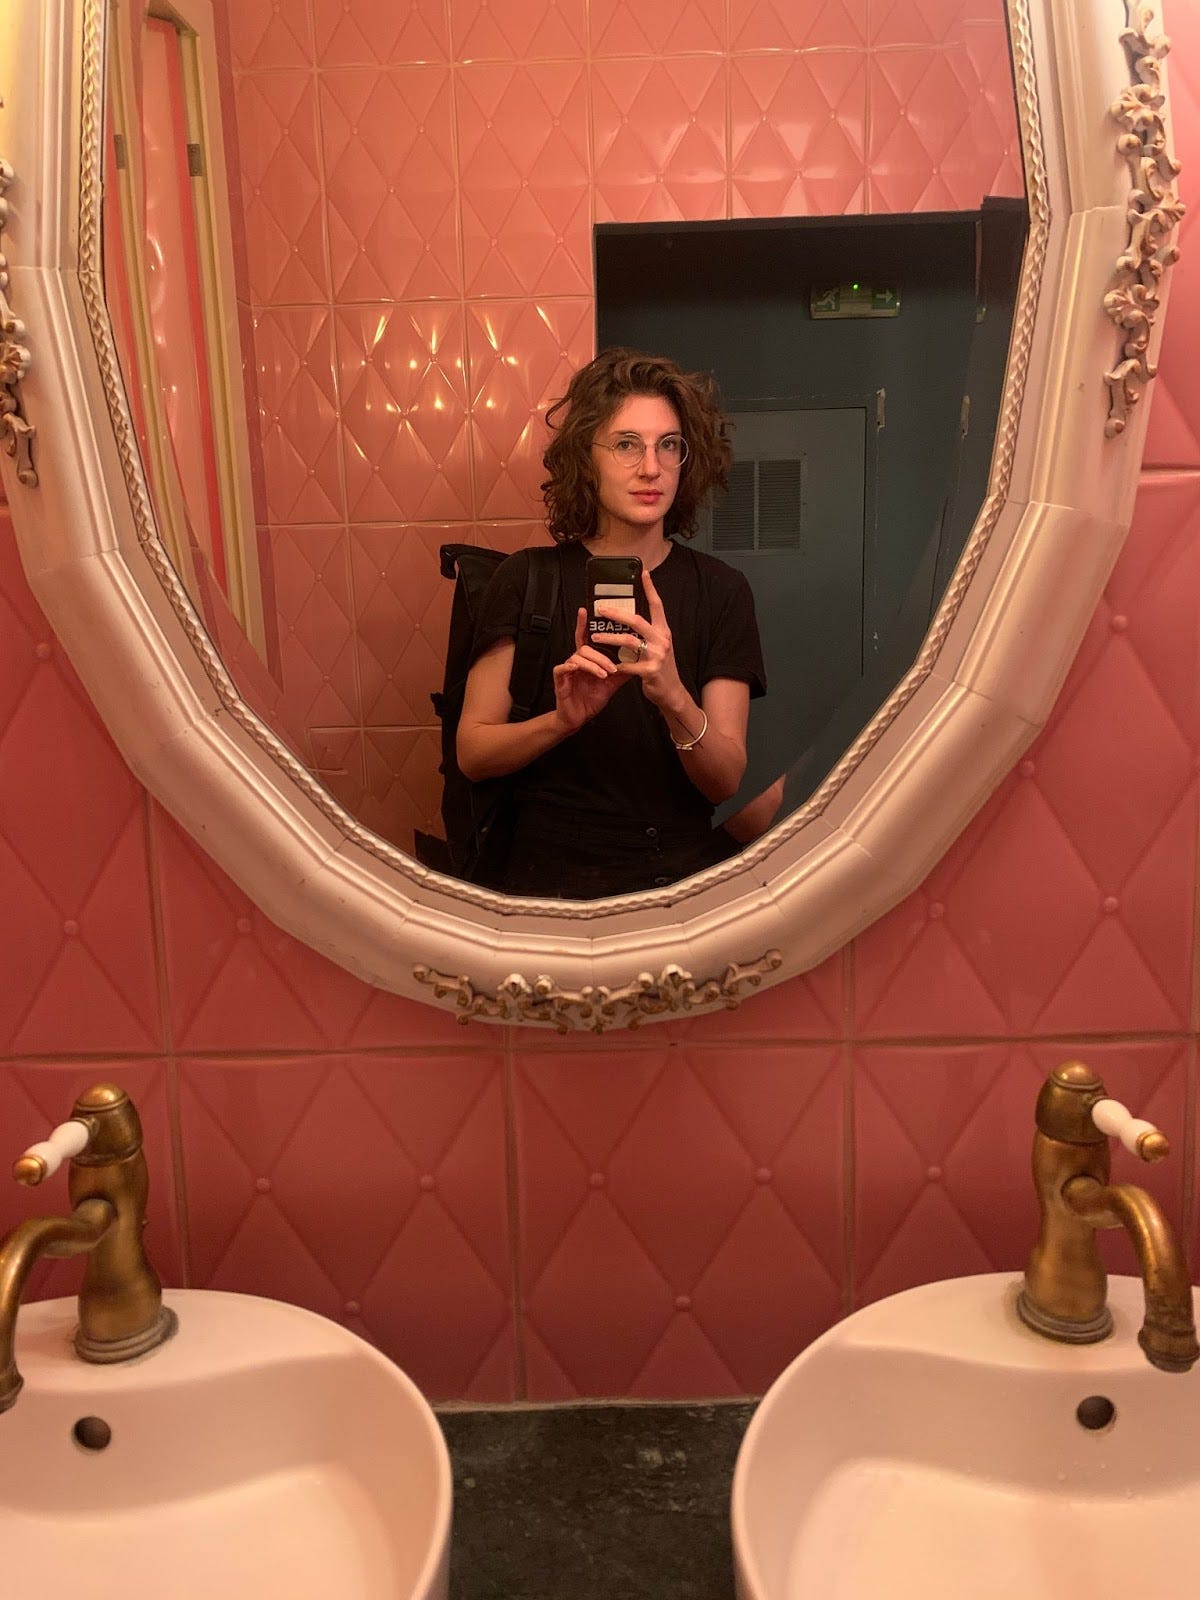 Lauren Olyer mirror selfie